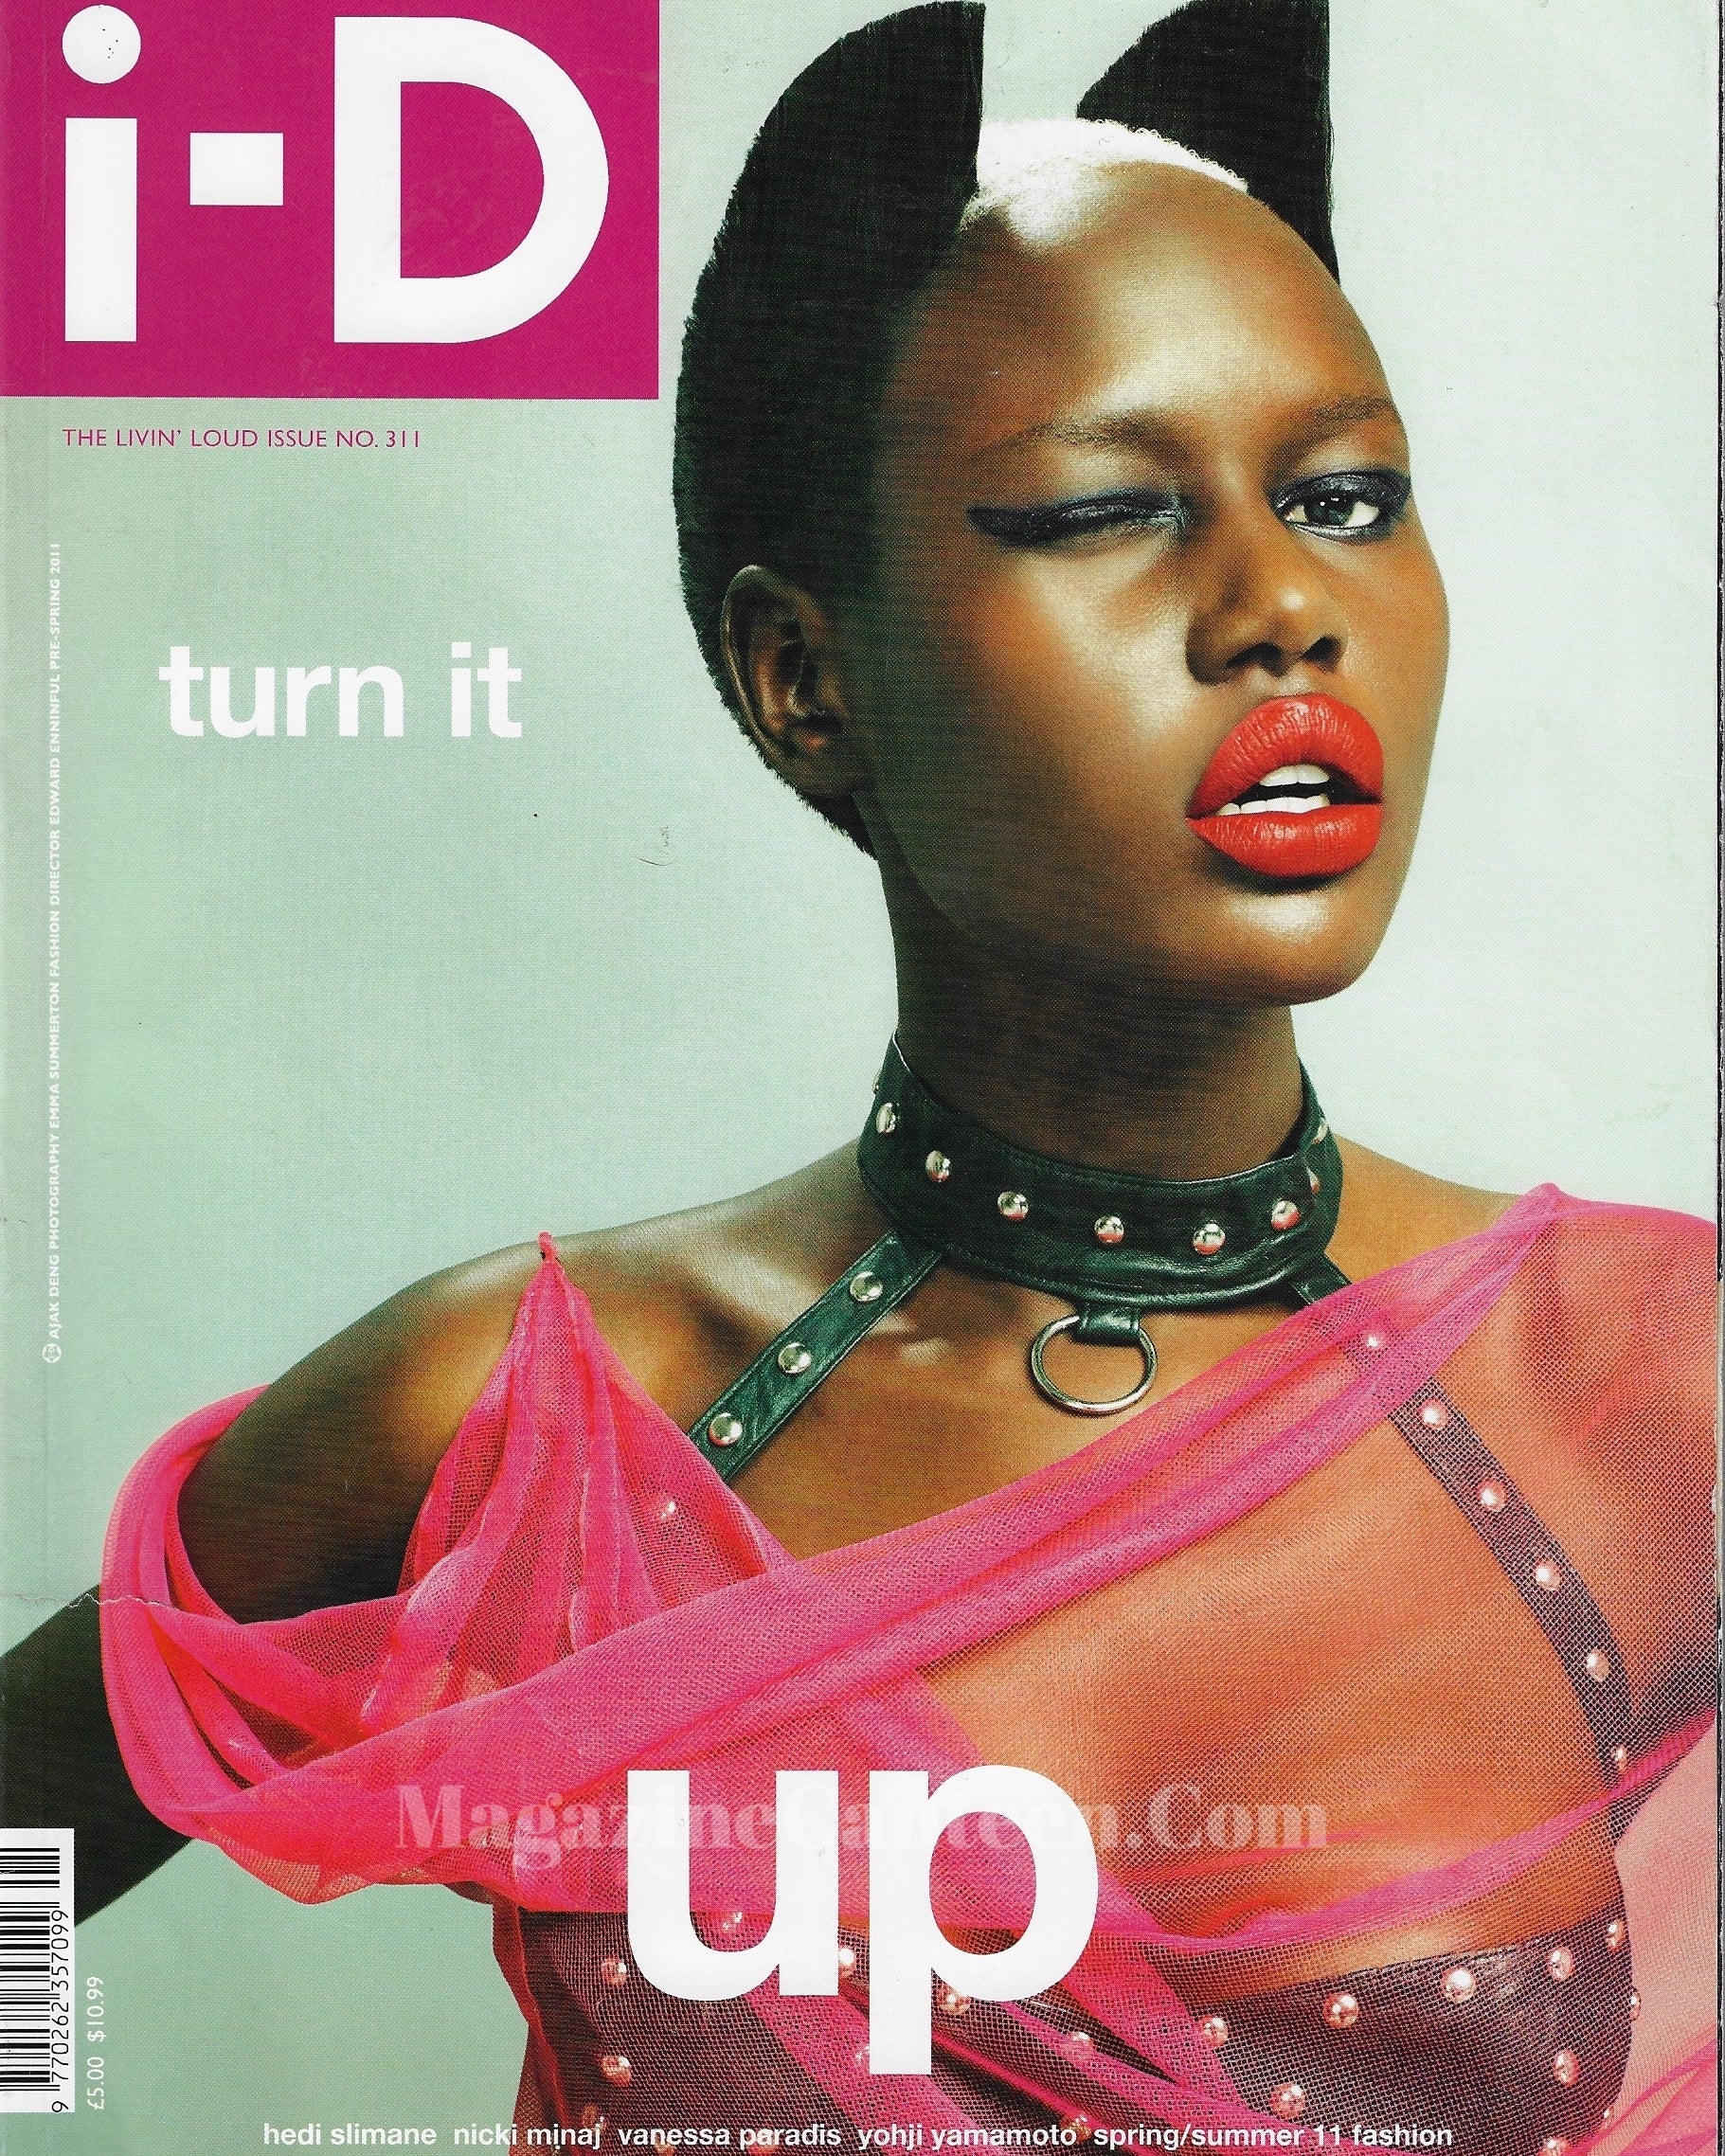 I-D Magazine 311 - Ajak Deng 2011